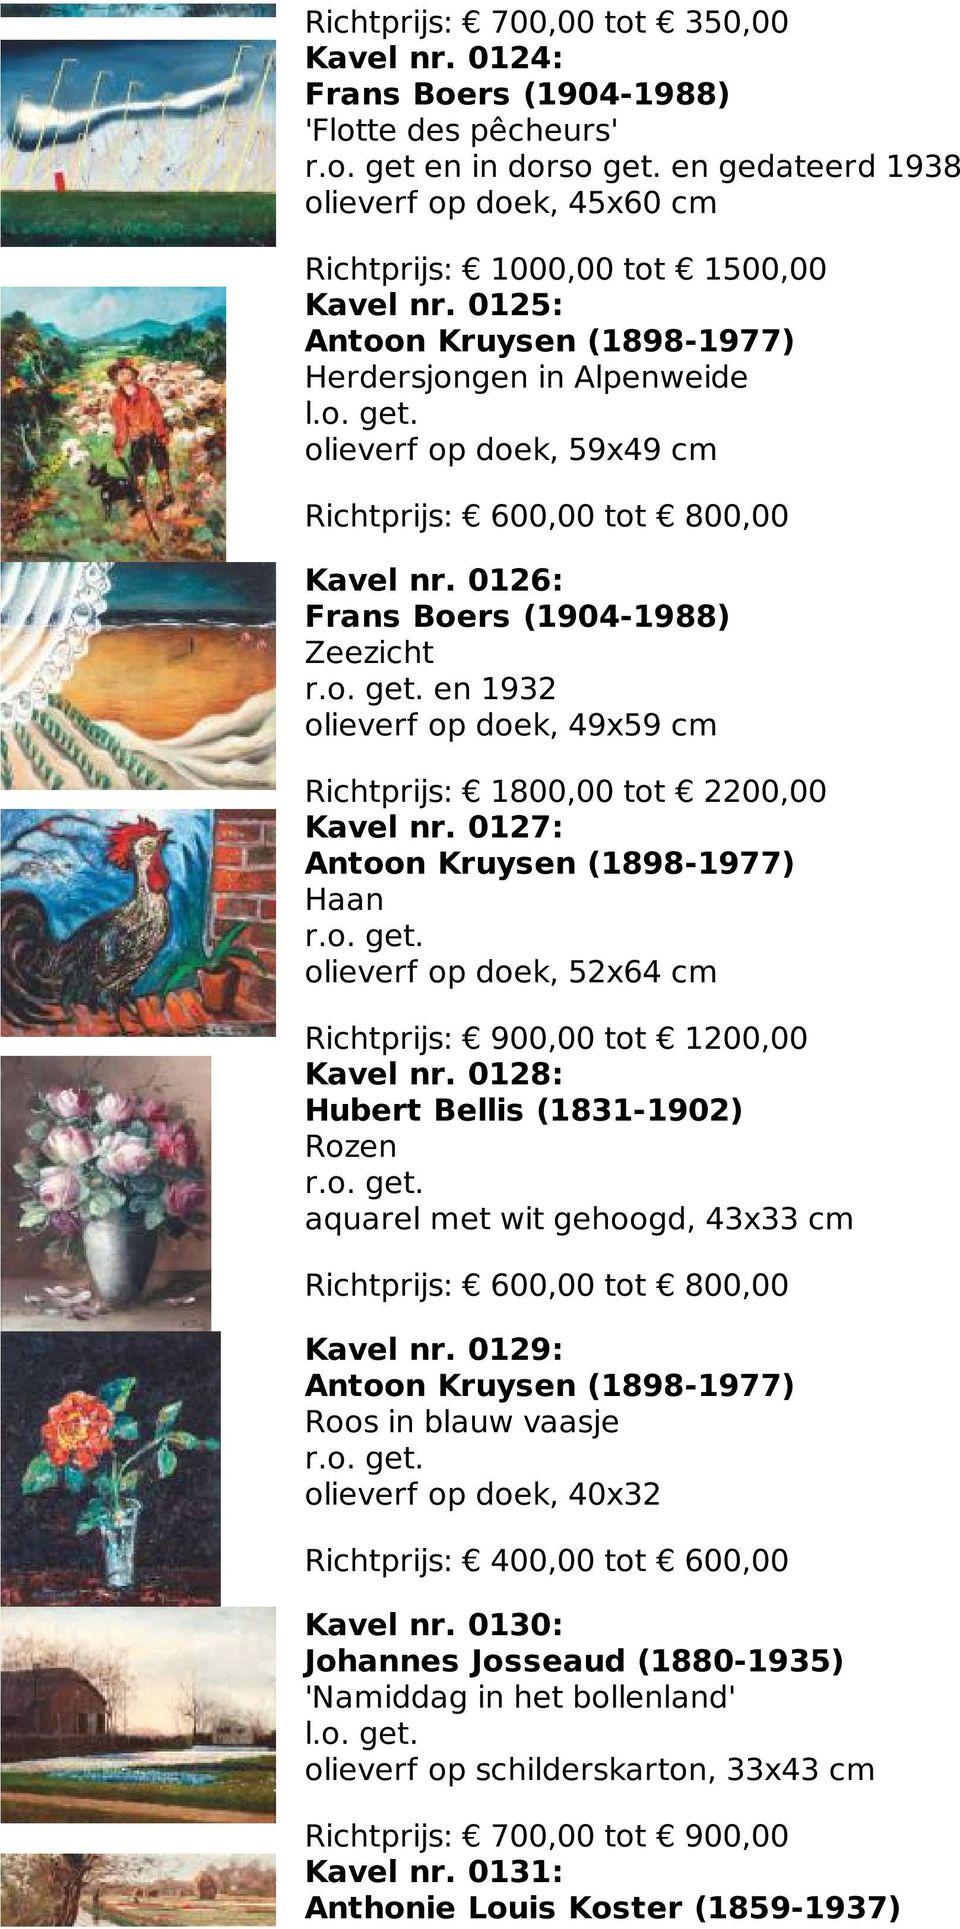 0126: Frans Boers (1904-1988) Zeezicht en 1932 olieverf op doek, 49x59 cm Richtprijs: 1800,00 tot 2200,00 Kavel nr.